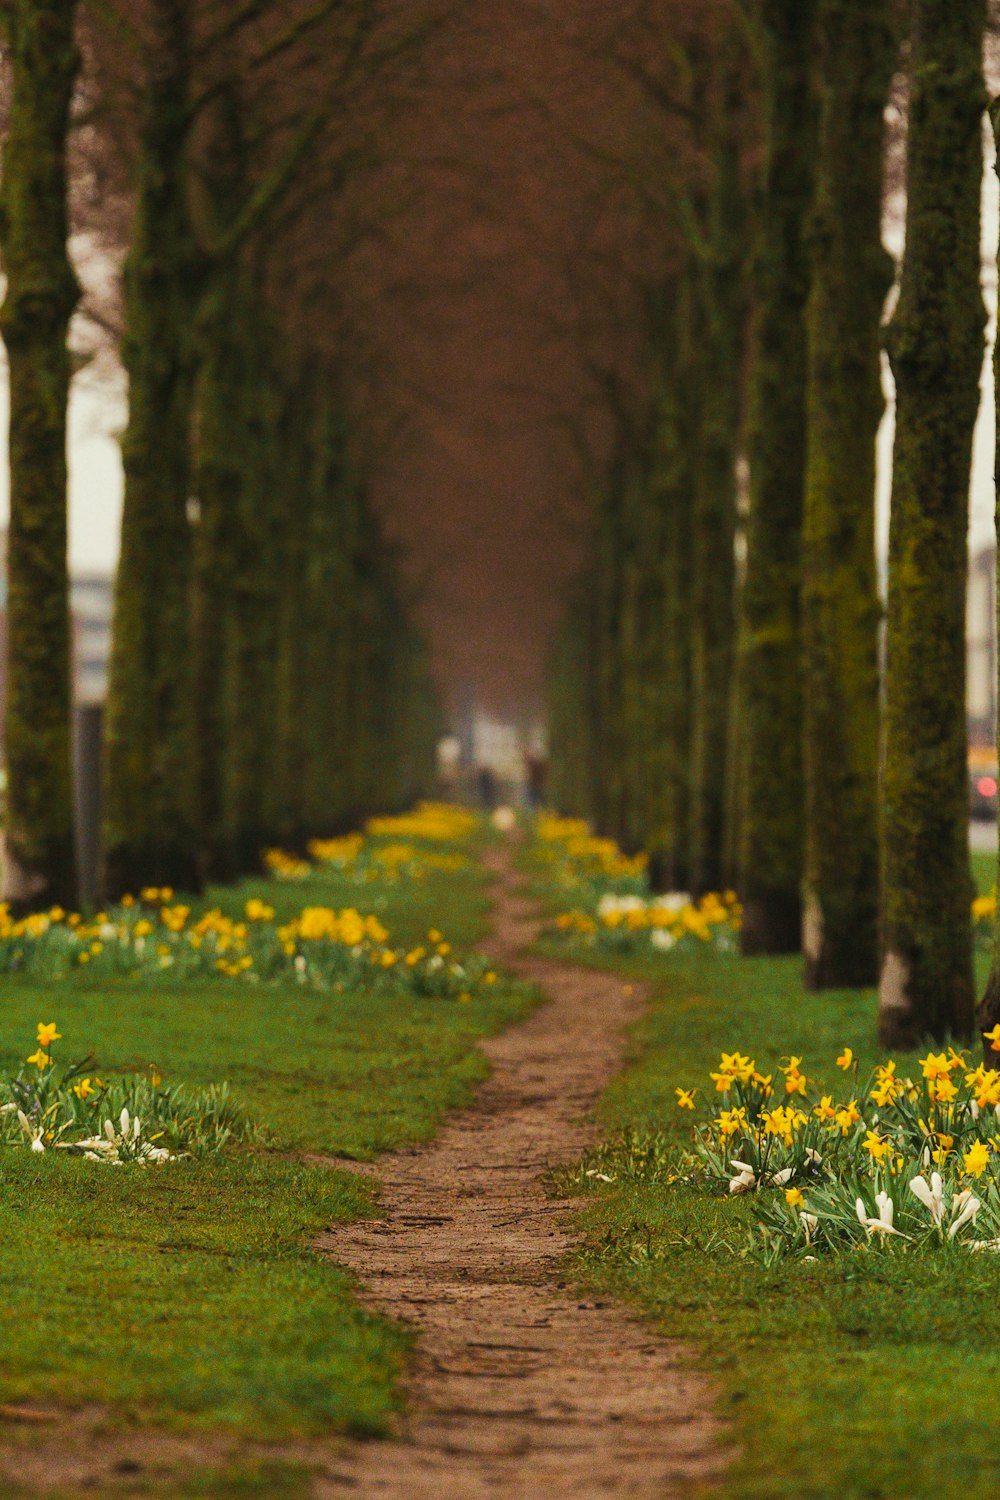 Un camino de tierra bordeado de árboles y flores amarillas